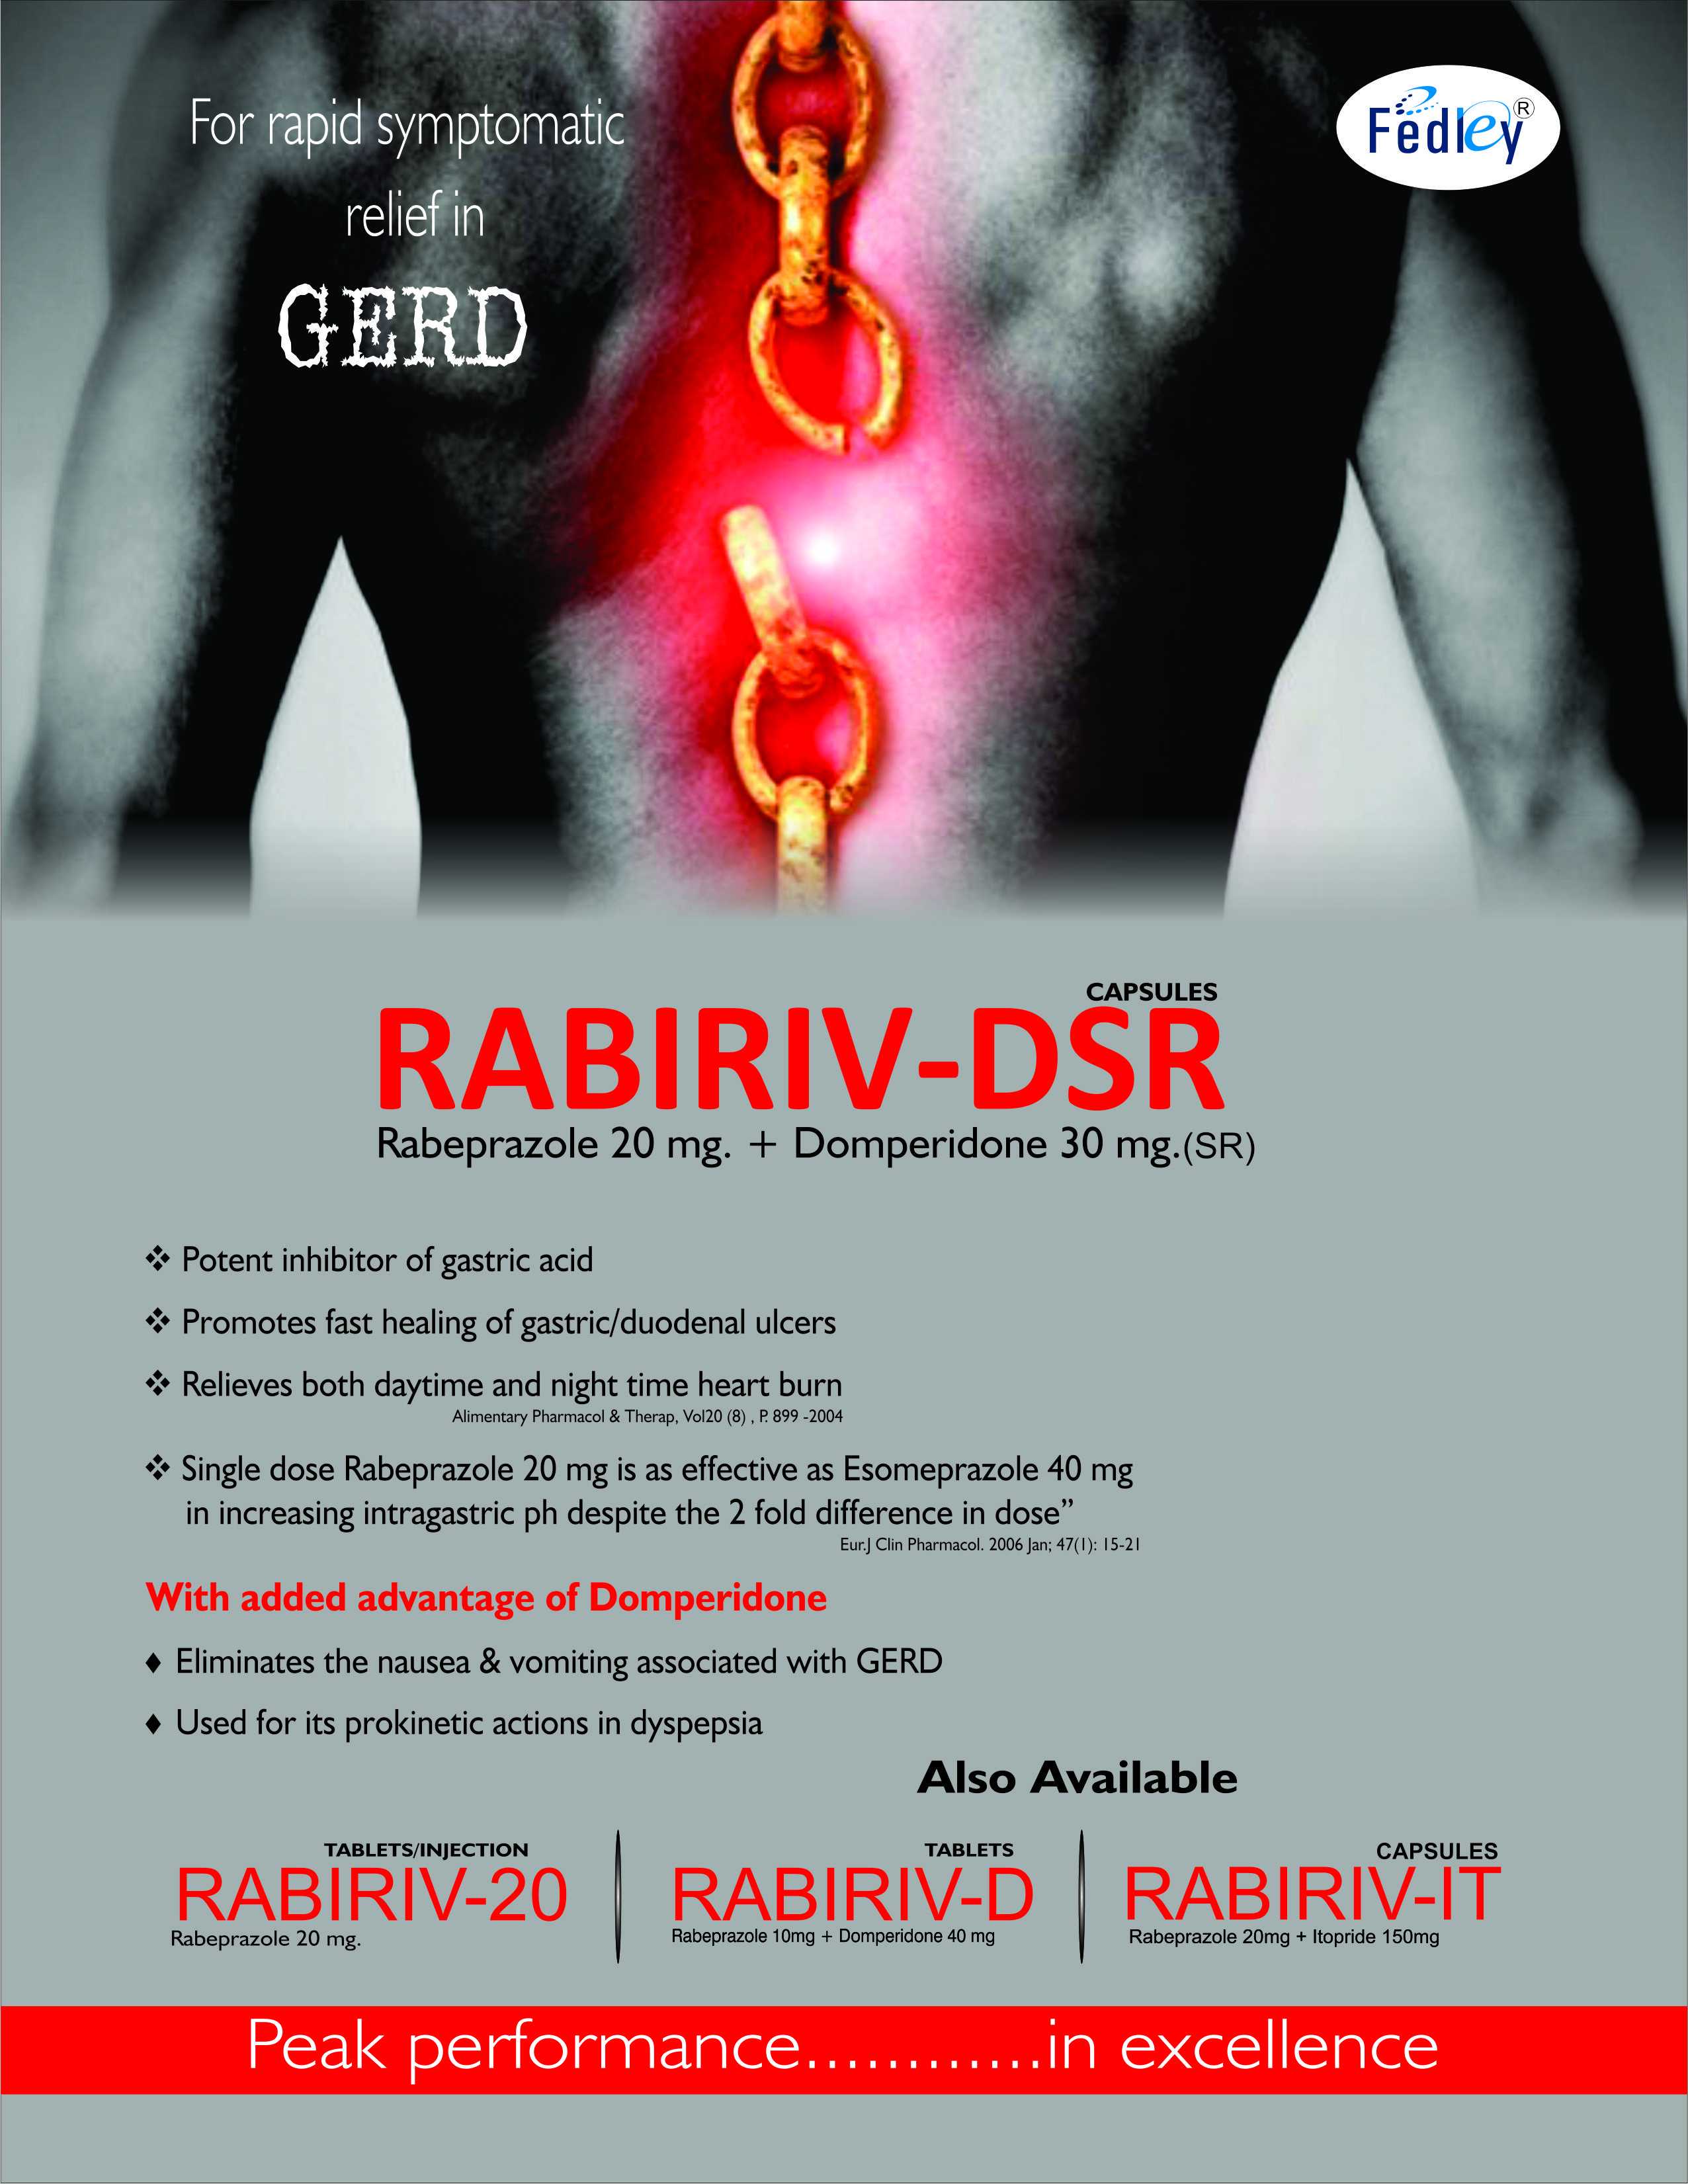 RABIRIV-DSR